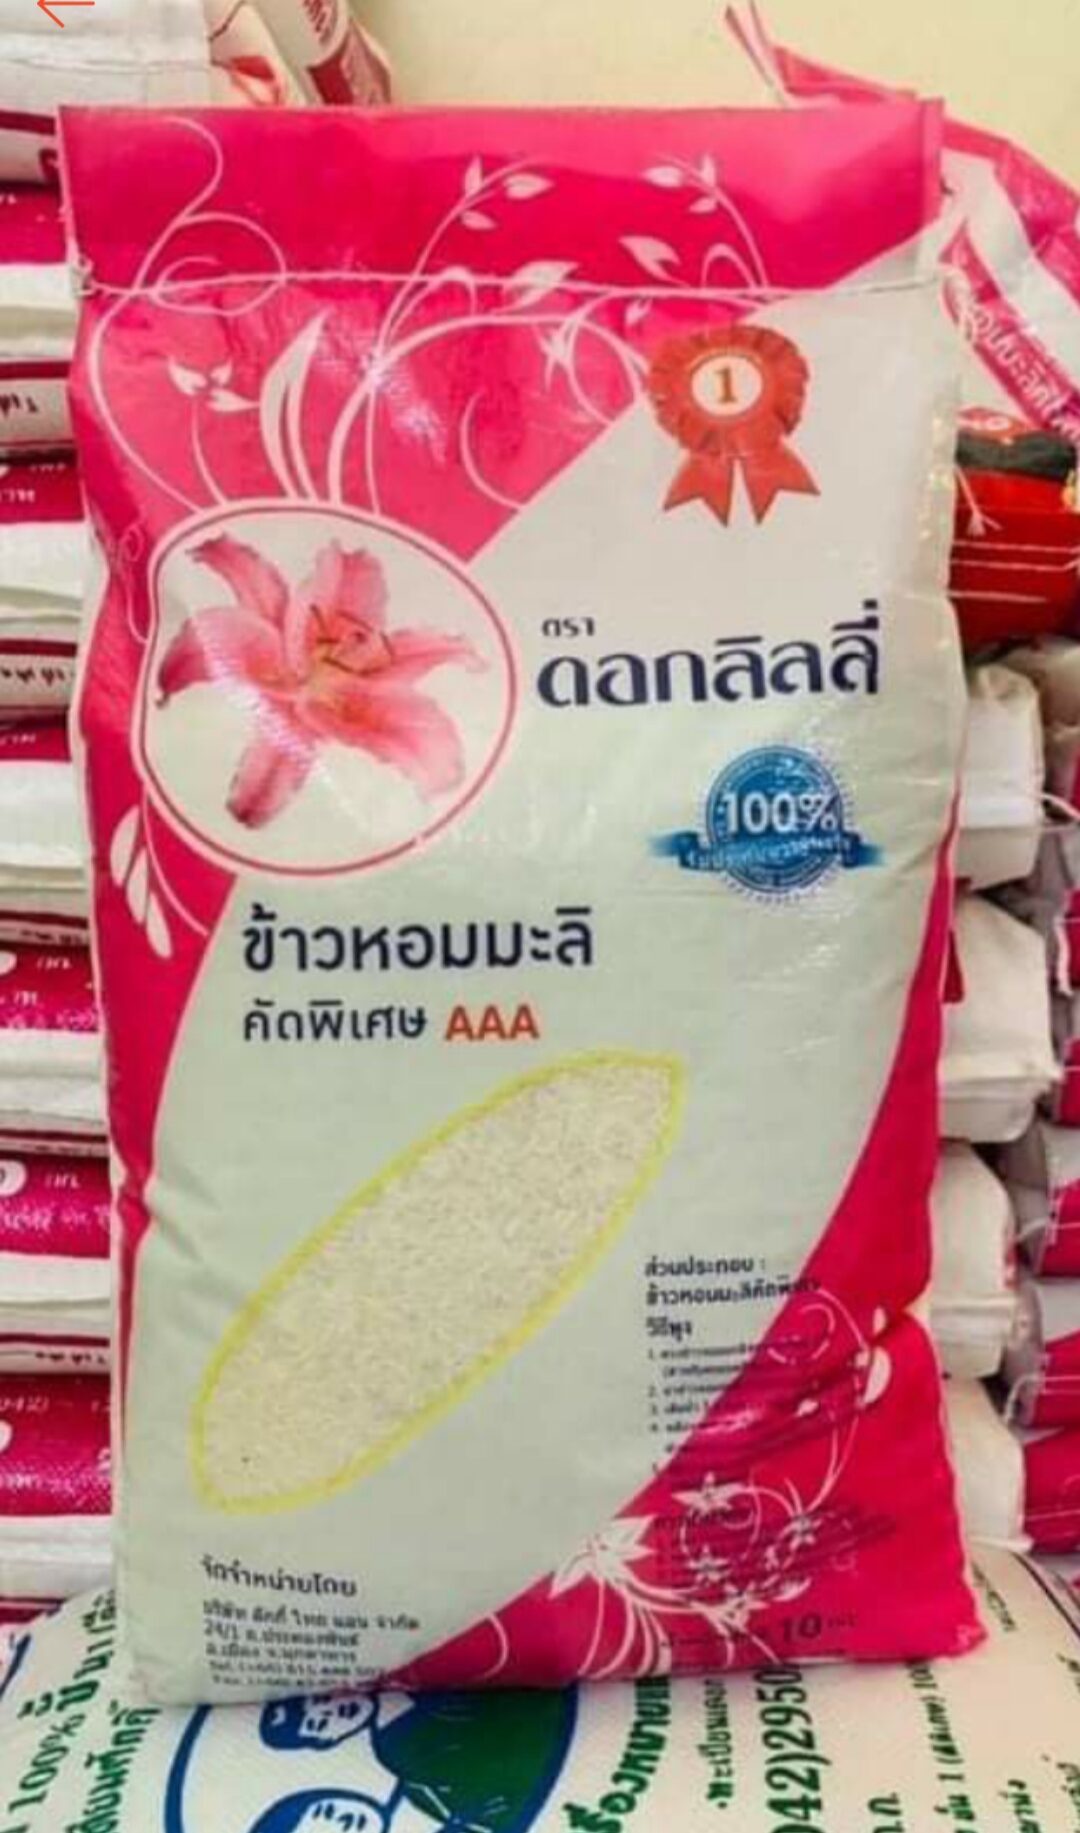 3kg gạo Hom Mali nhập khẩu Thái Lan dẻo thơm bao ăn thượng hạng